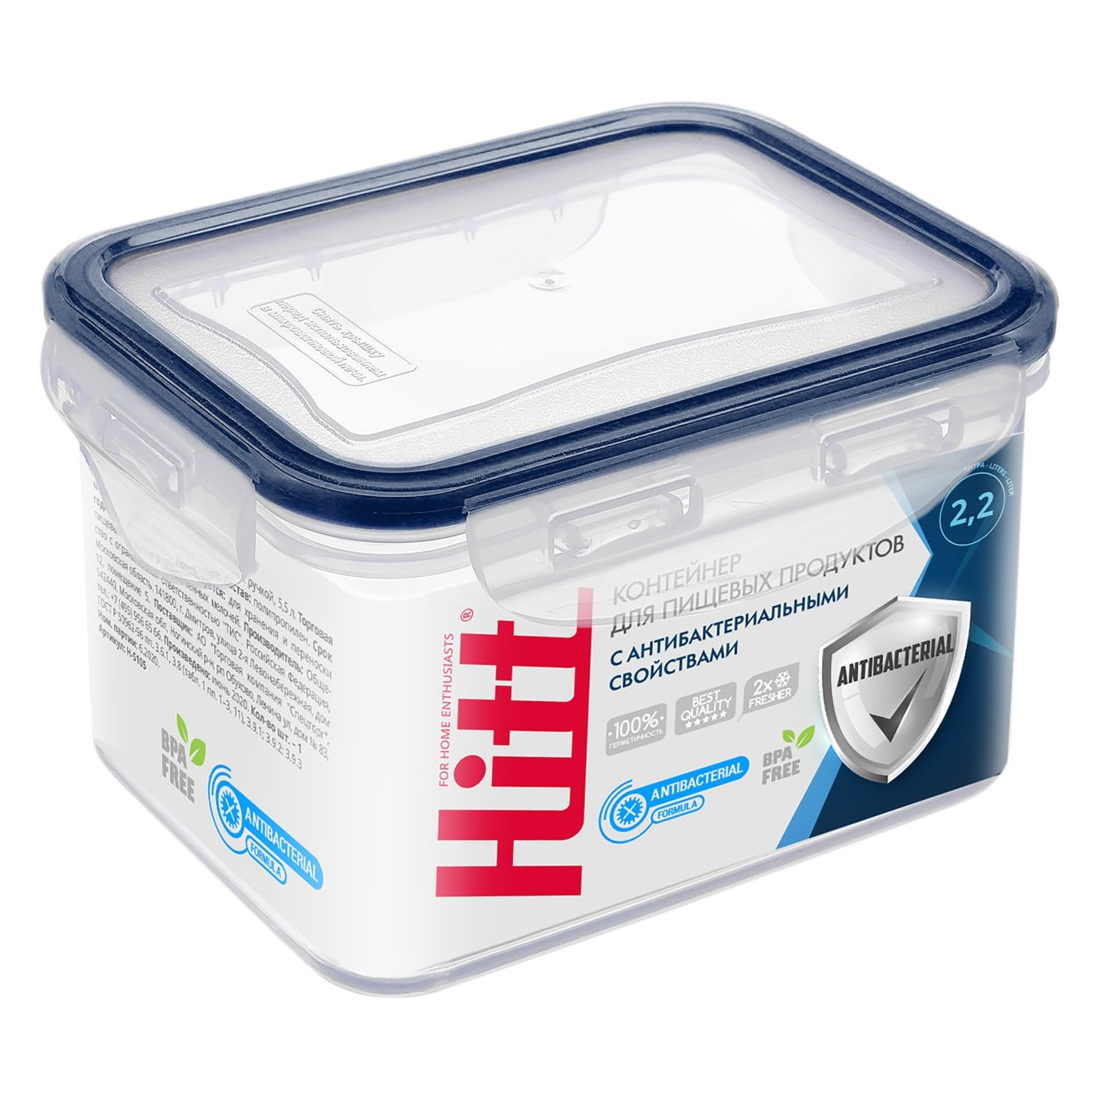 Контейнер герметичный антибактериальный Hitt 2,2 л контейнер для продуктов hitt пластиковый герметичный с ручкой 2 л